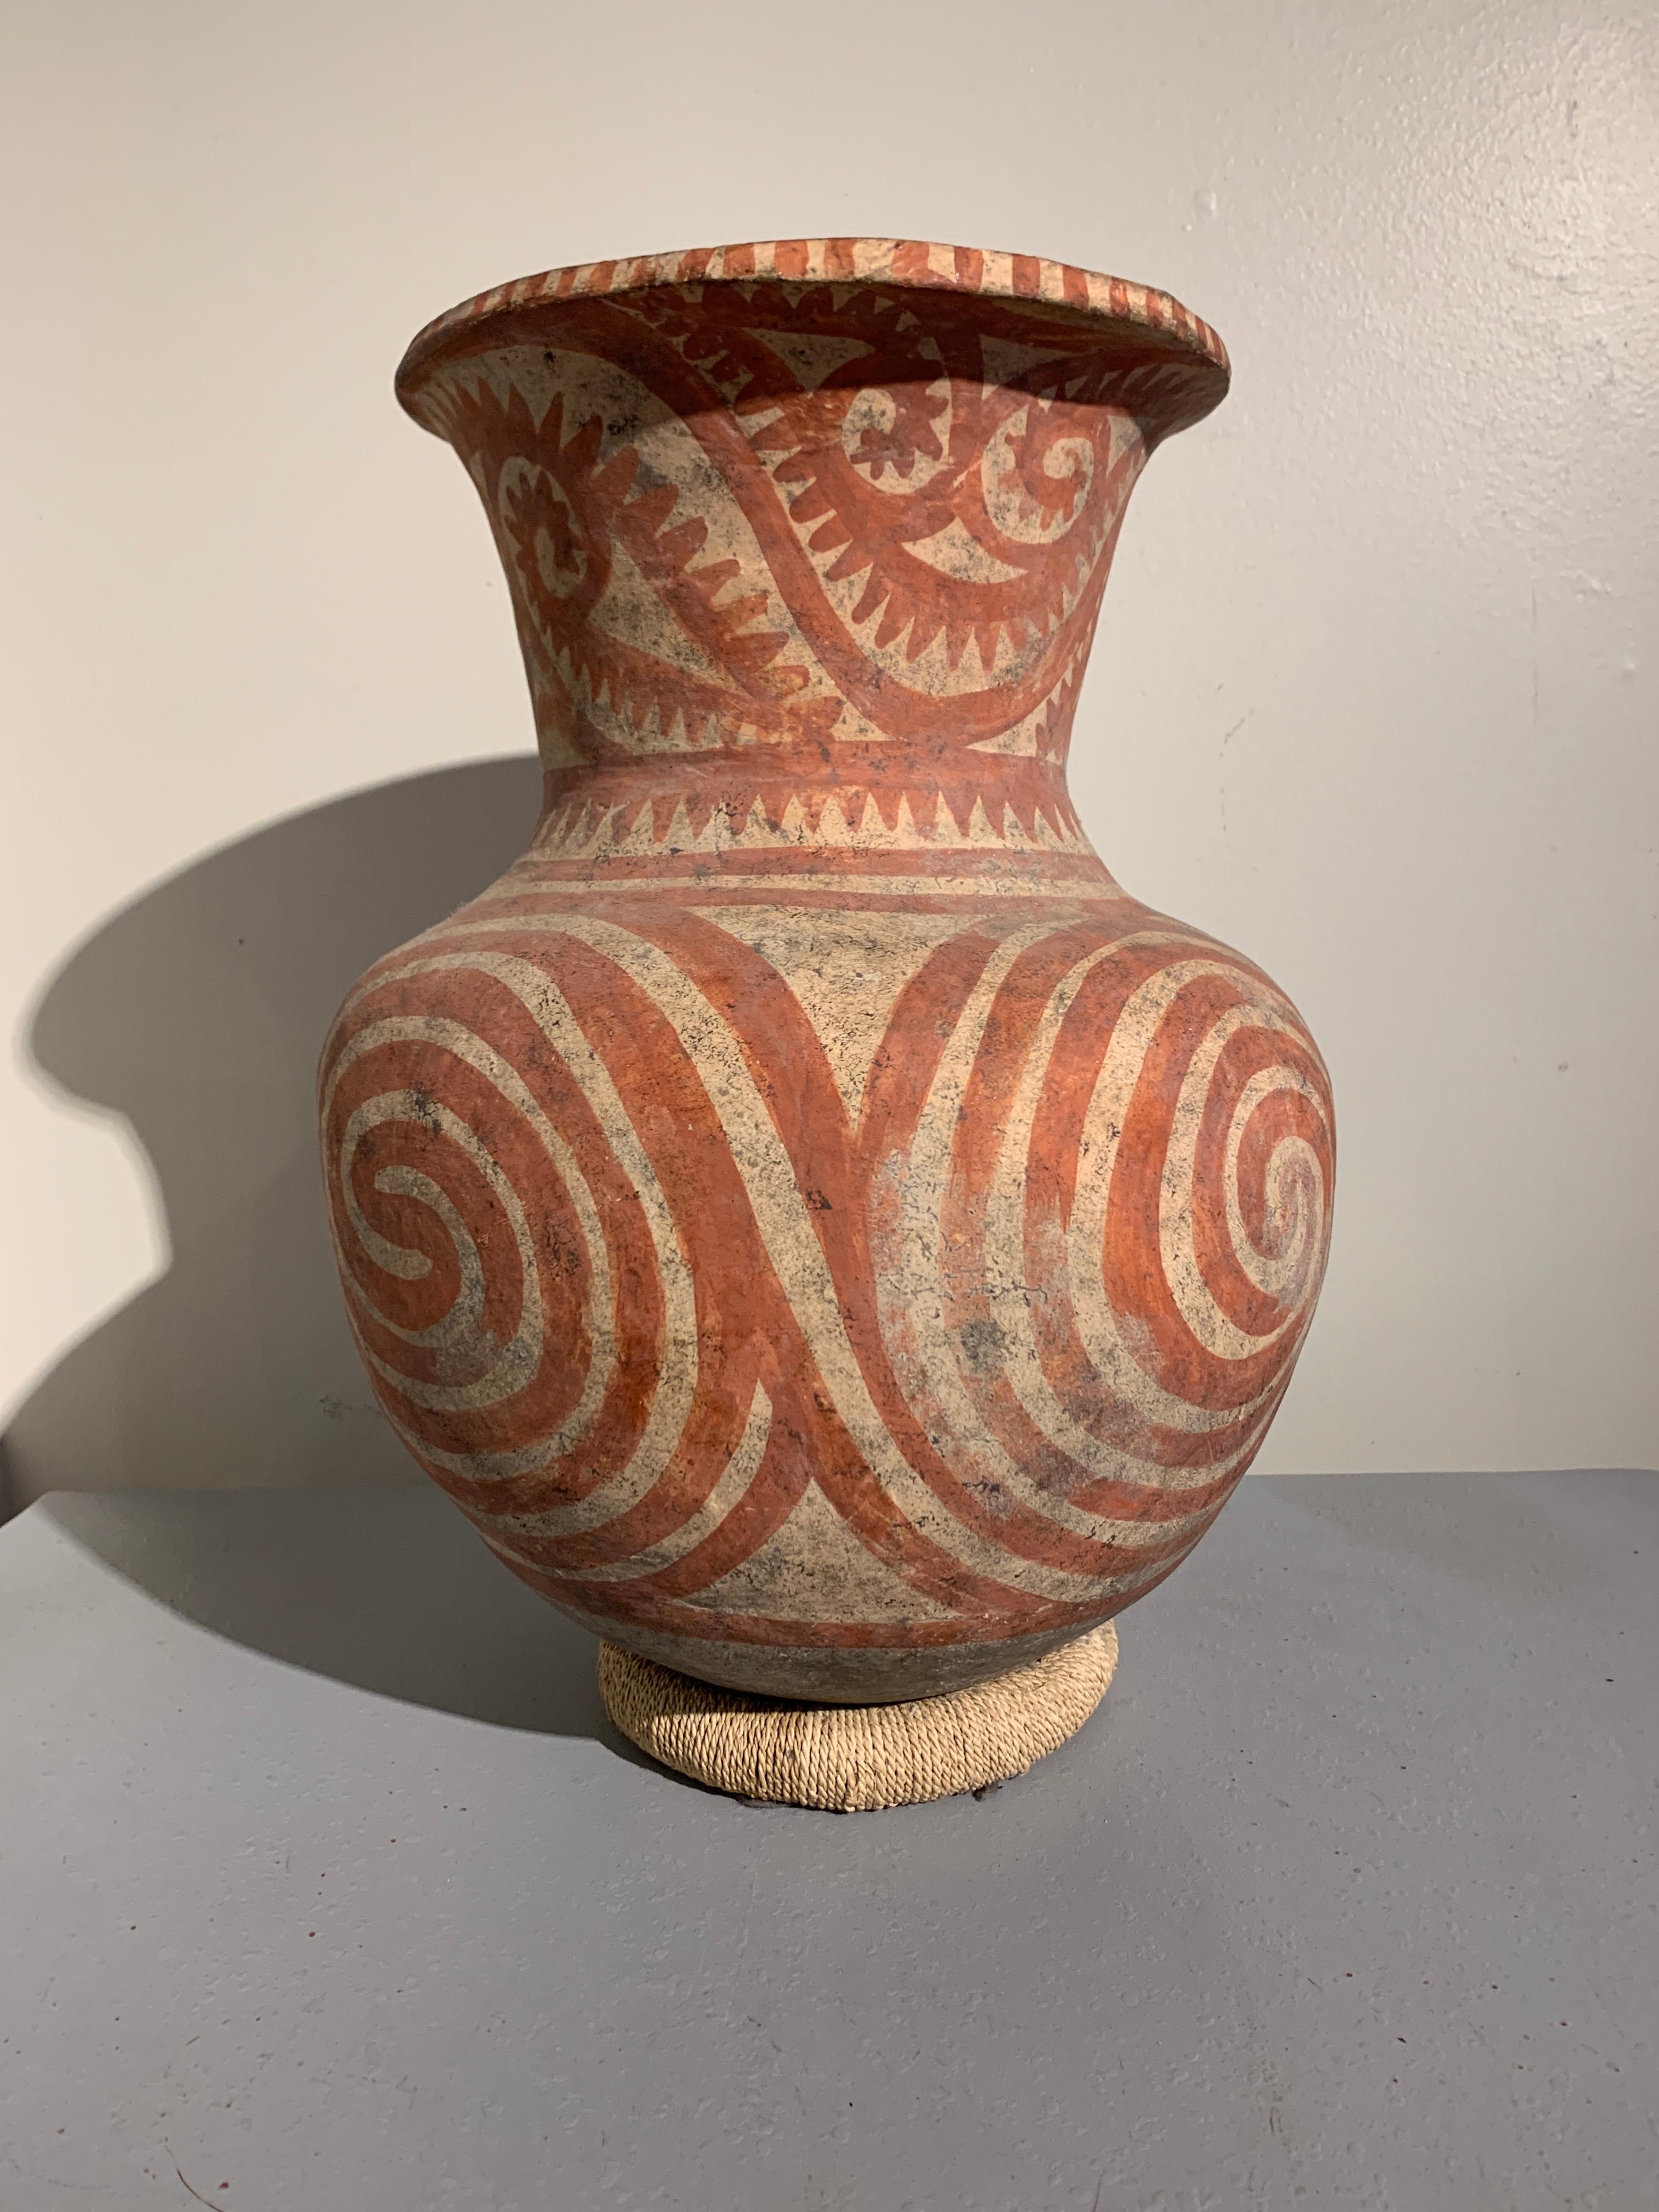 Un énorme récipient en poterie peinte de la culture Ban Chiang, vers 300 avant J.-C., Thaïlande.

La grande jarre de stockage est peinte d'un motif en spirale audacieux en ocre rouge sur un fond chamois. Les motifs en spirale qui occupent la